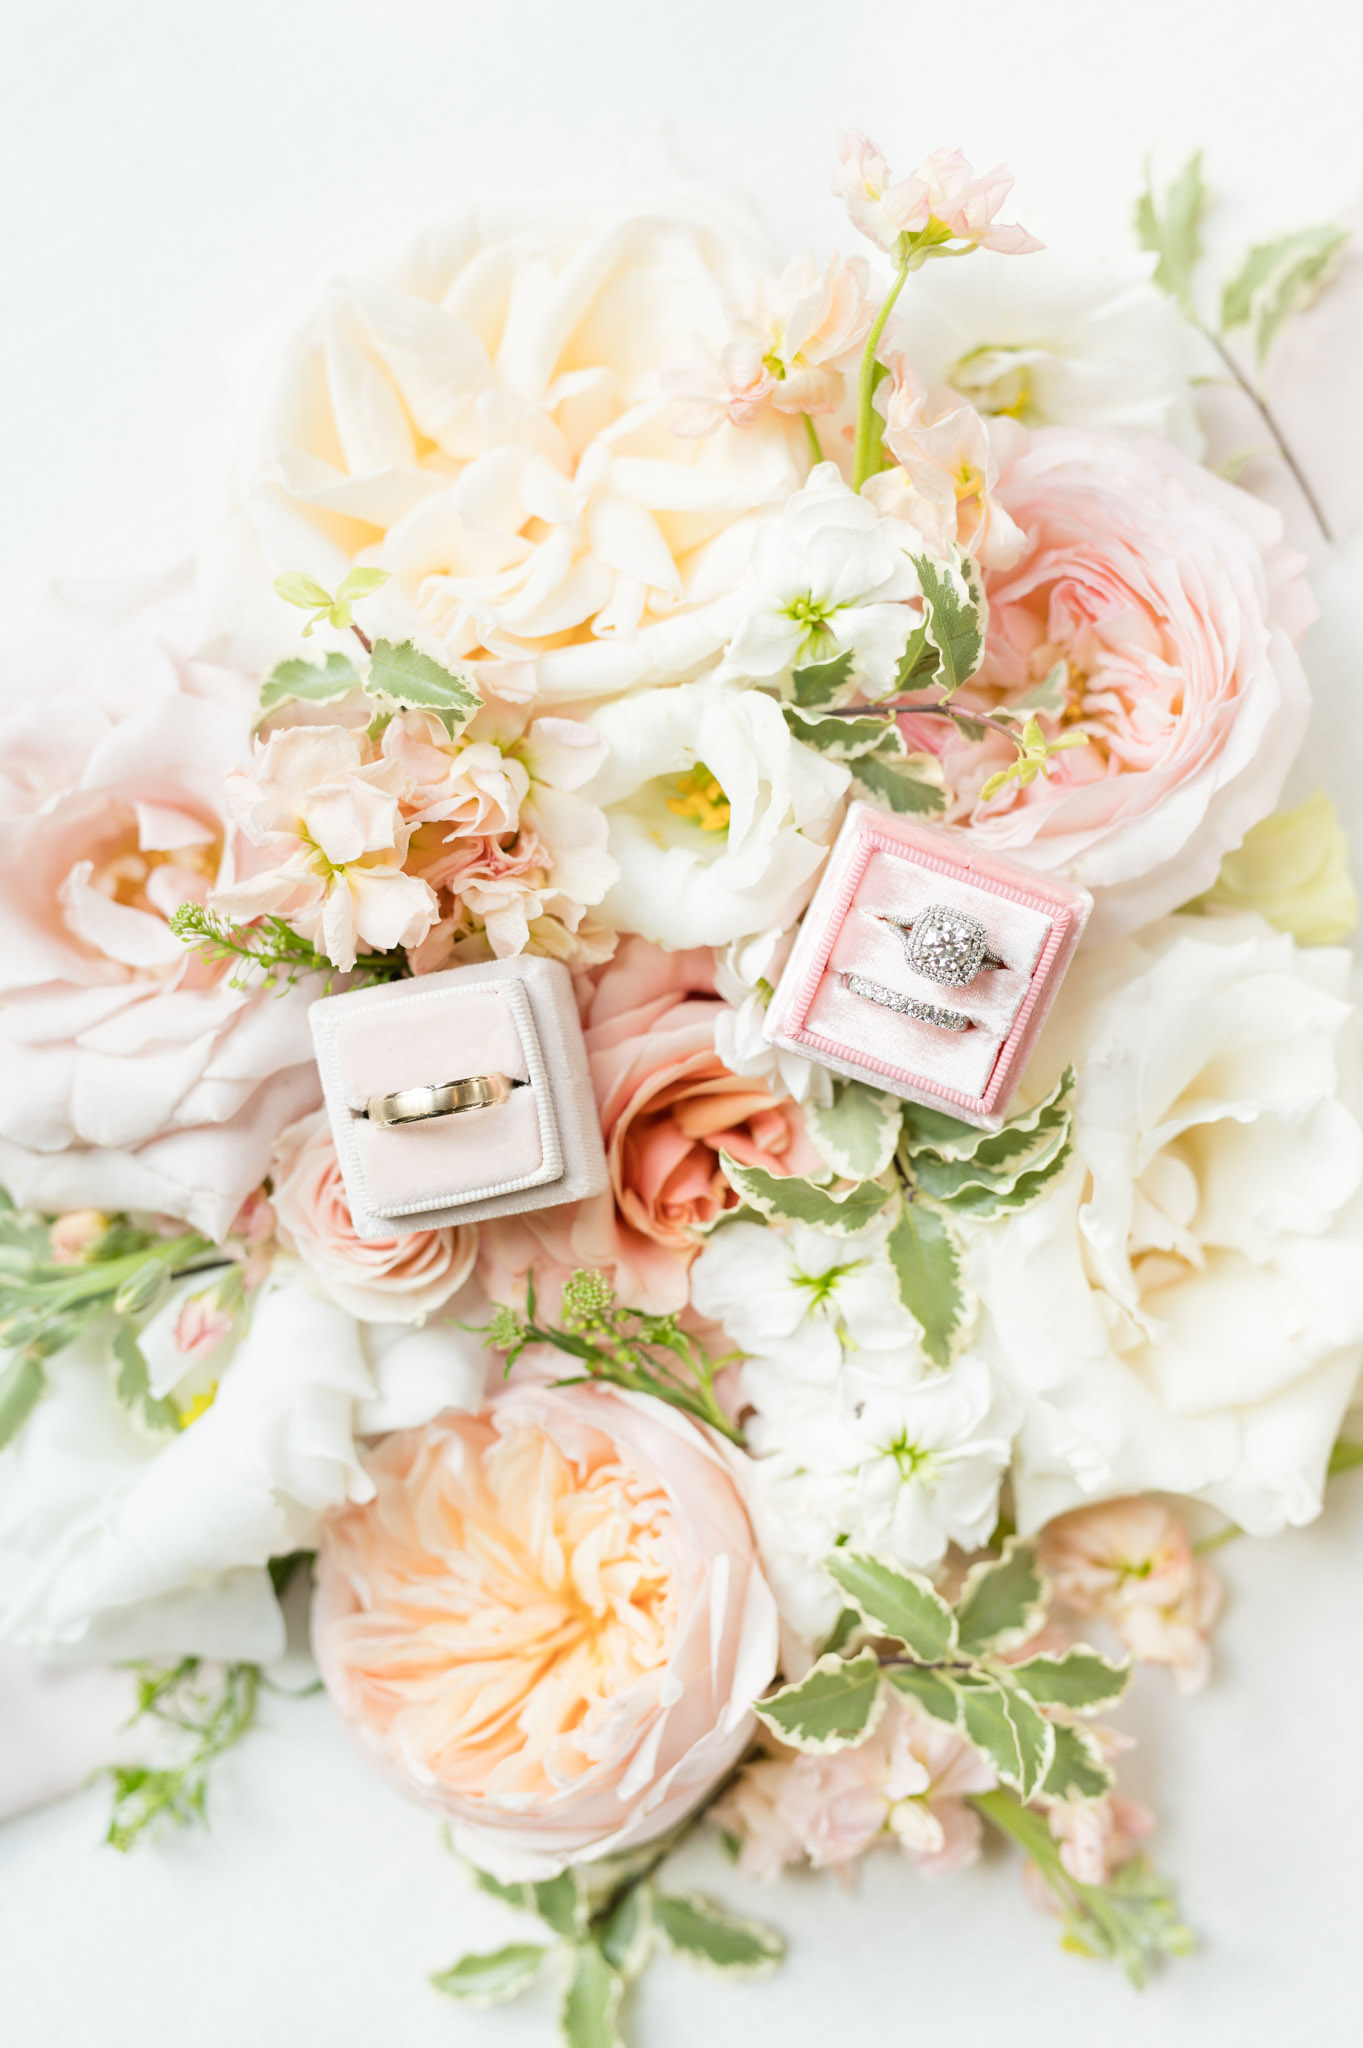 Wedding rings sit on flowers.